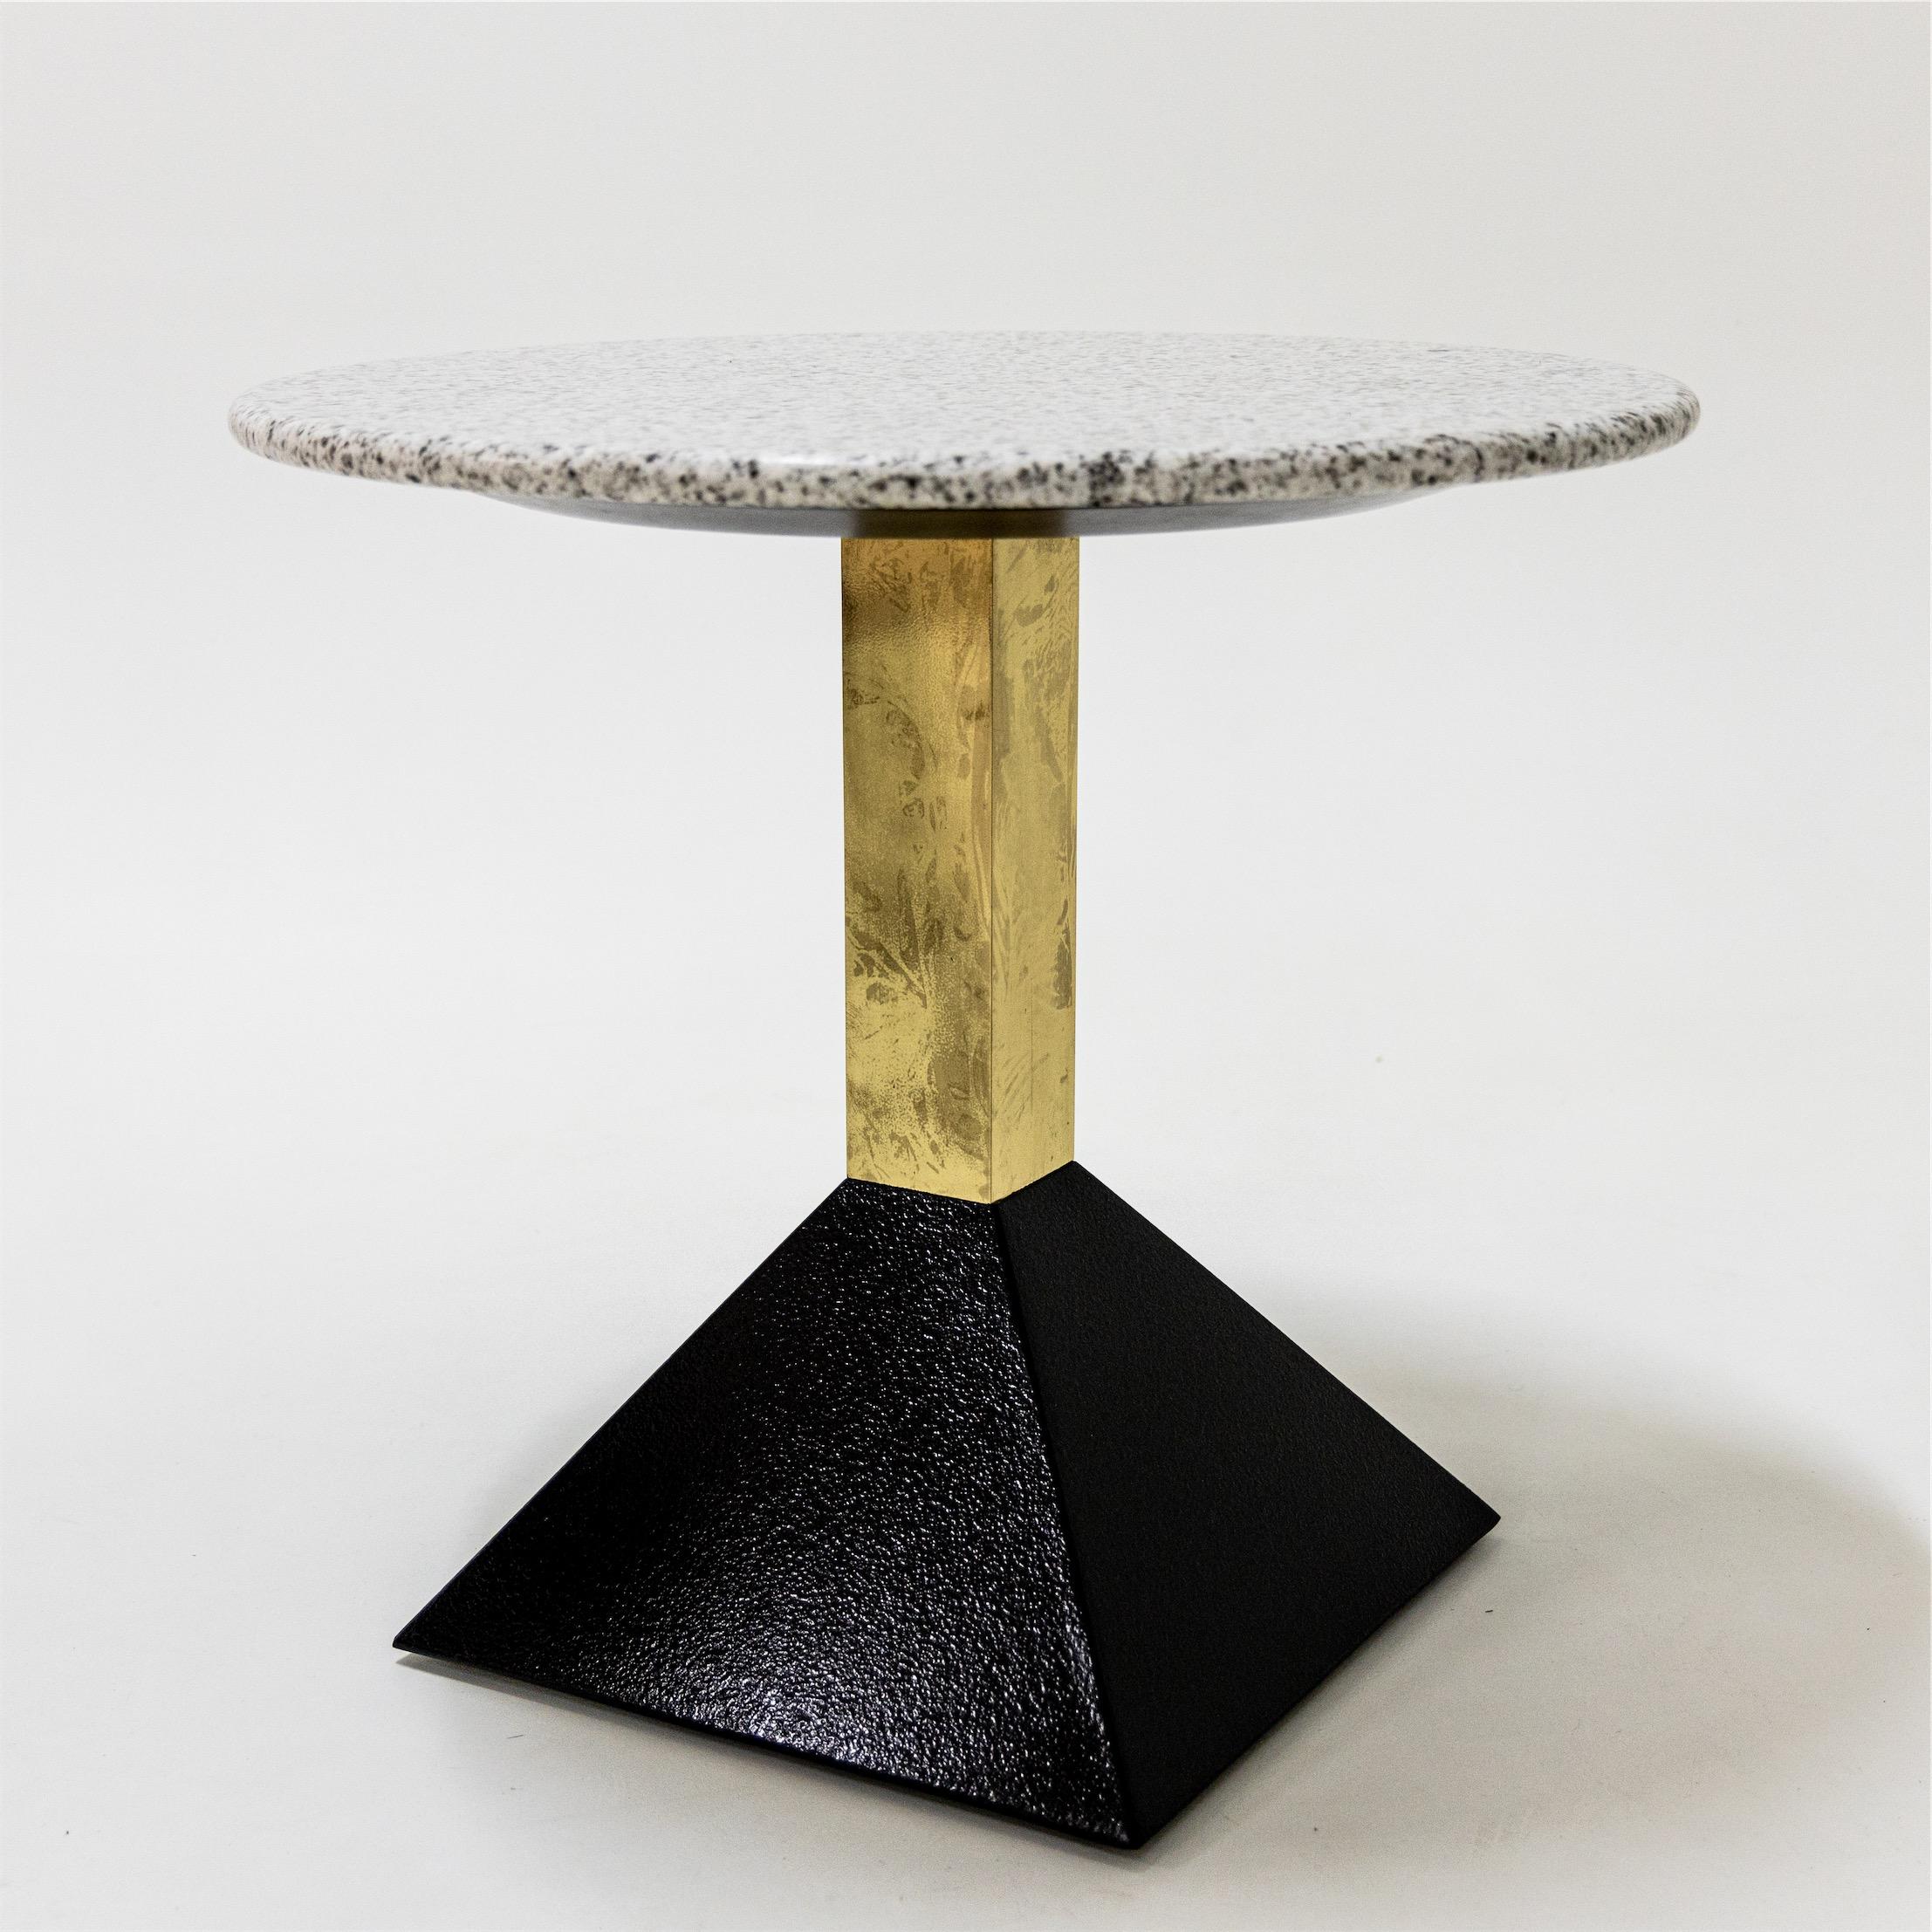 Zwei Tische mit runden Granitplatten in Weiß bzw. Rosa auf einem quadratischen Schaft aus Messing und einem schwarzen pyramidenförmigen Sockel.